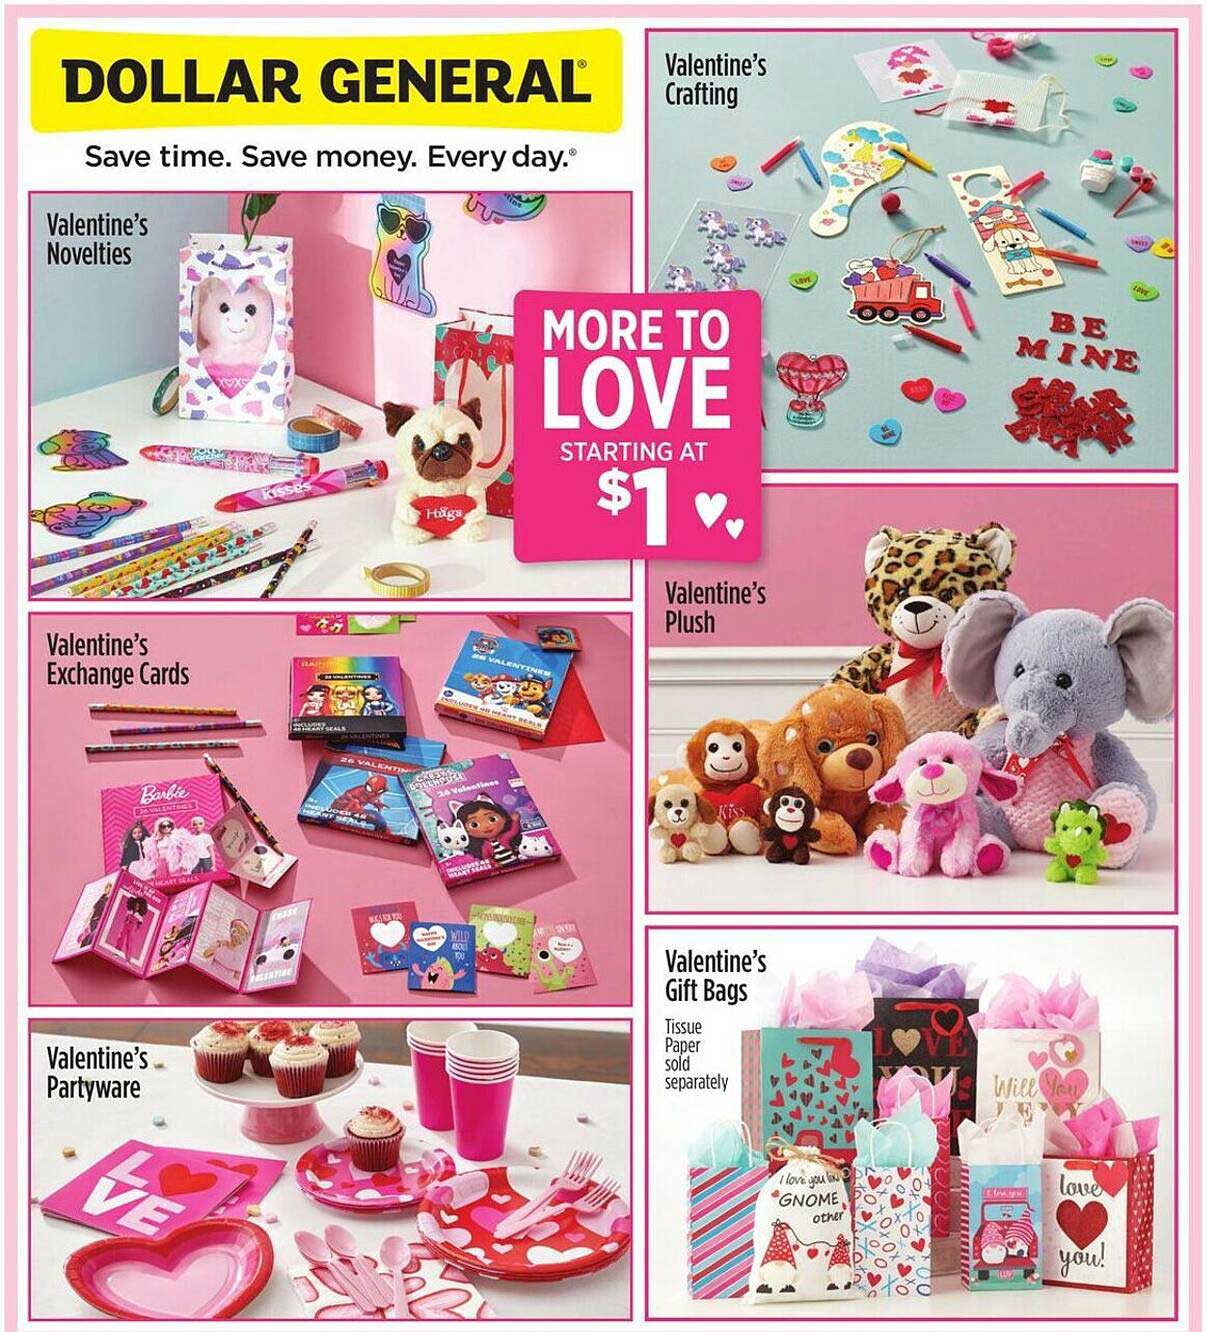 Dollar General Valentine's Novelties, Valentine's Exchange Cards, Valentine's Partyware, Valentine's Crafting, Valentine's Plush, Valentine's Gift Bags